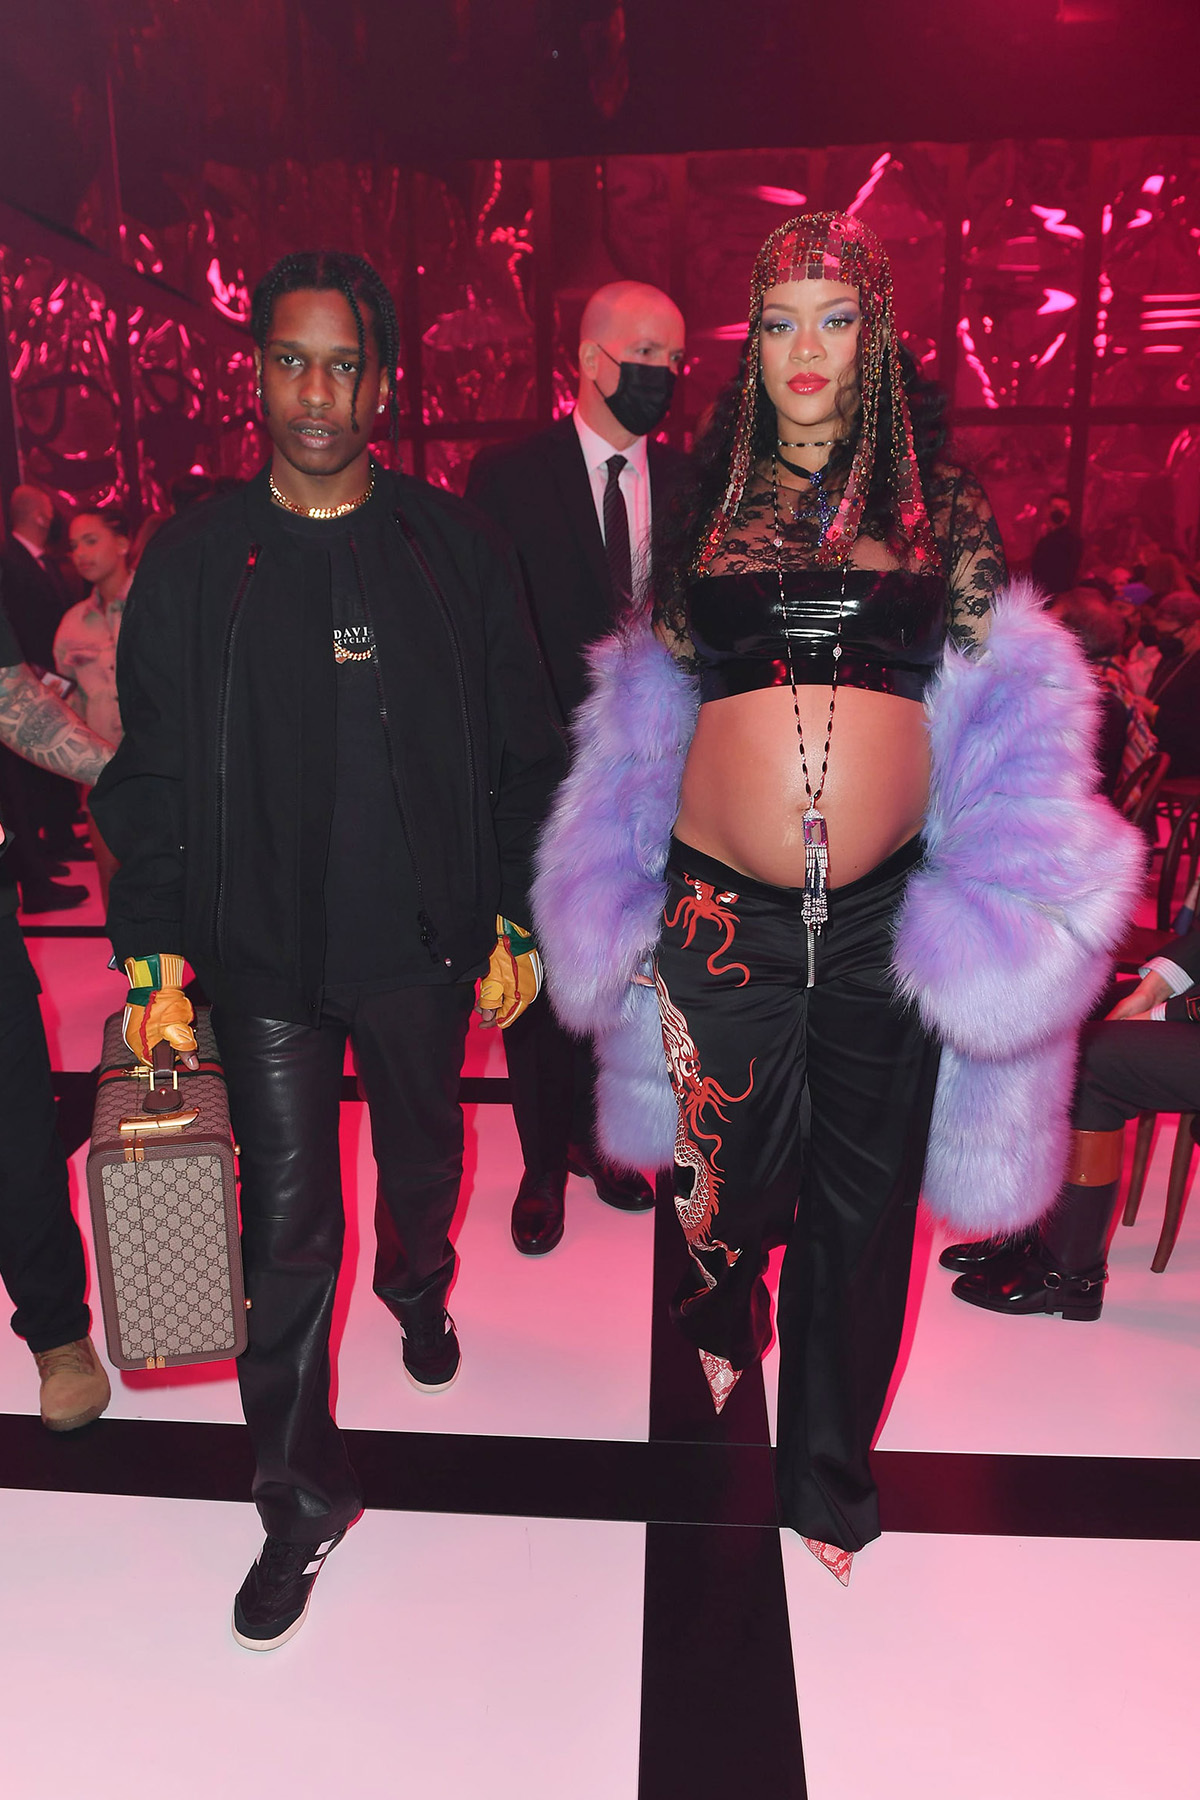 Tại show Gucci ở Milan vào ngày 25/2, Rihanna đã sánh đôi cùng bạn trai ASAP Rocky trong bộ crop top ngắn cũn phối cùng quần ống suông, khoác thêm lớp áo choàng lông và phụ kiện đội đầu được đính từ những miếng kim loại độc đáo.